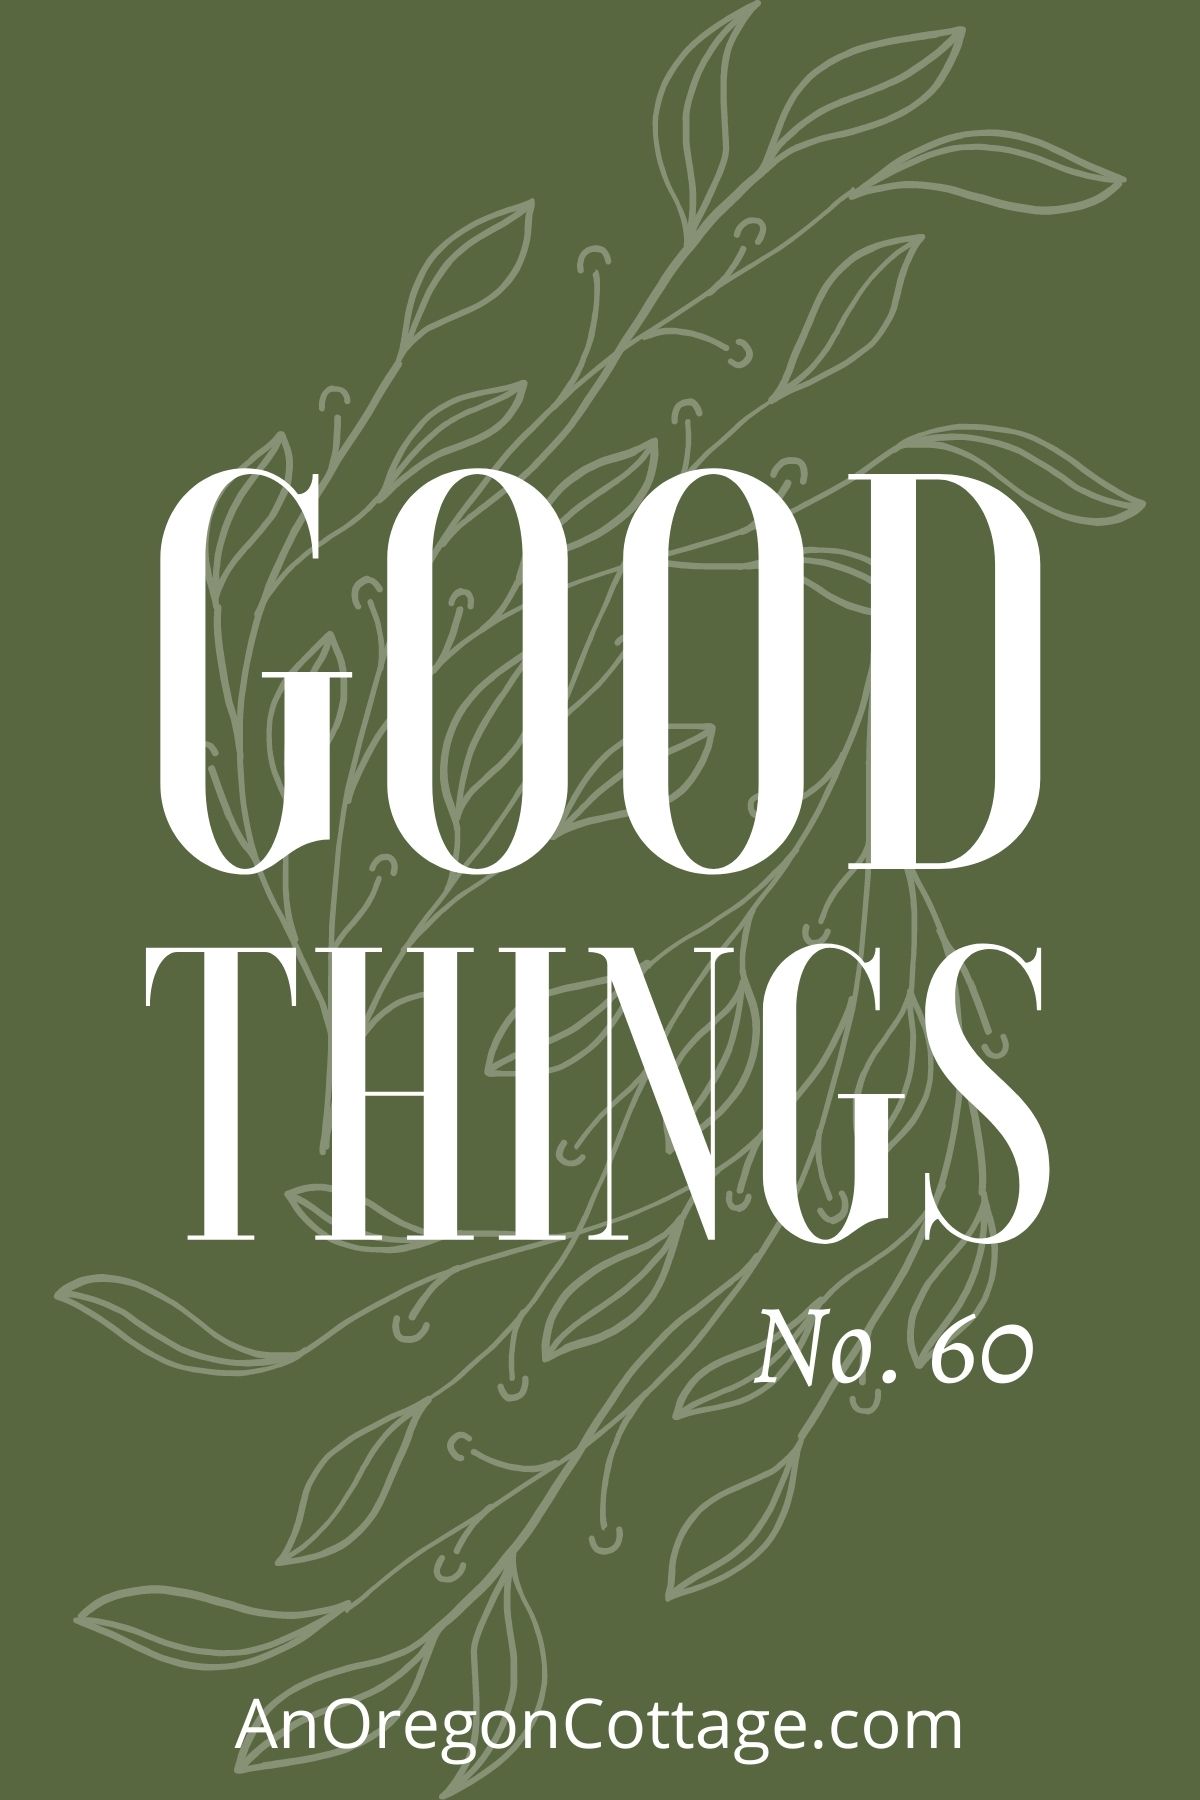 Good things list no.60